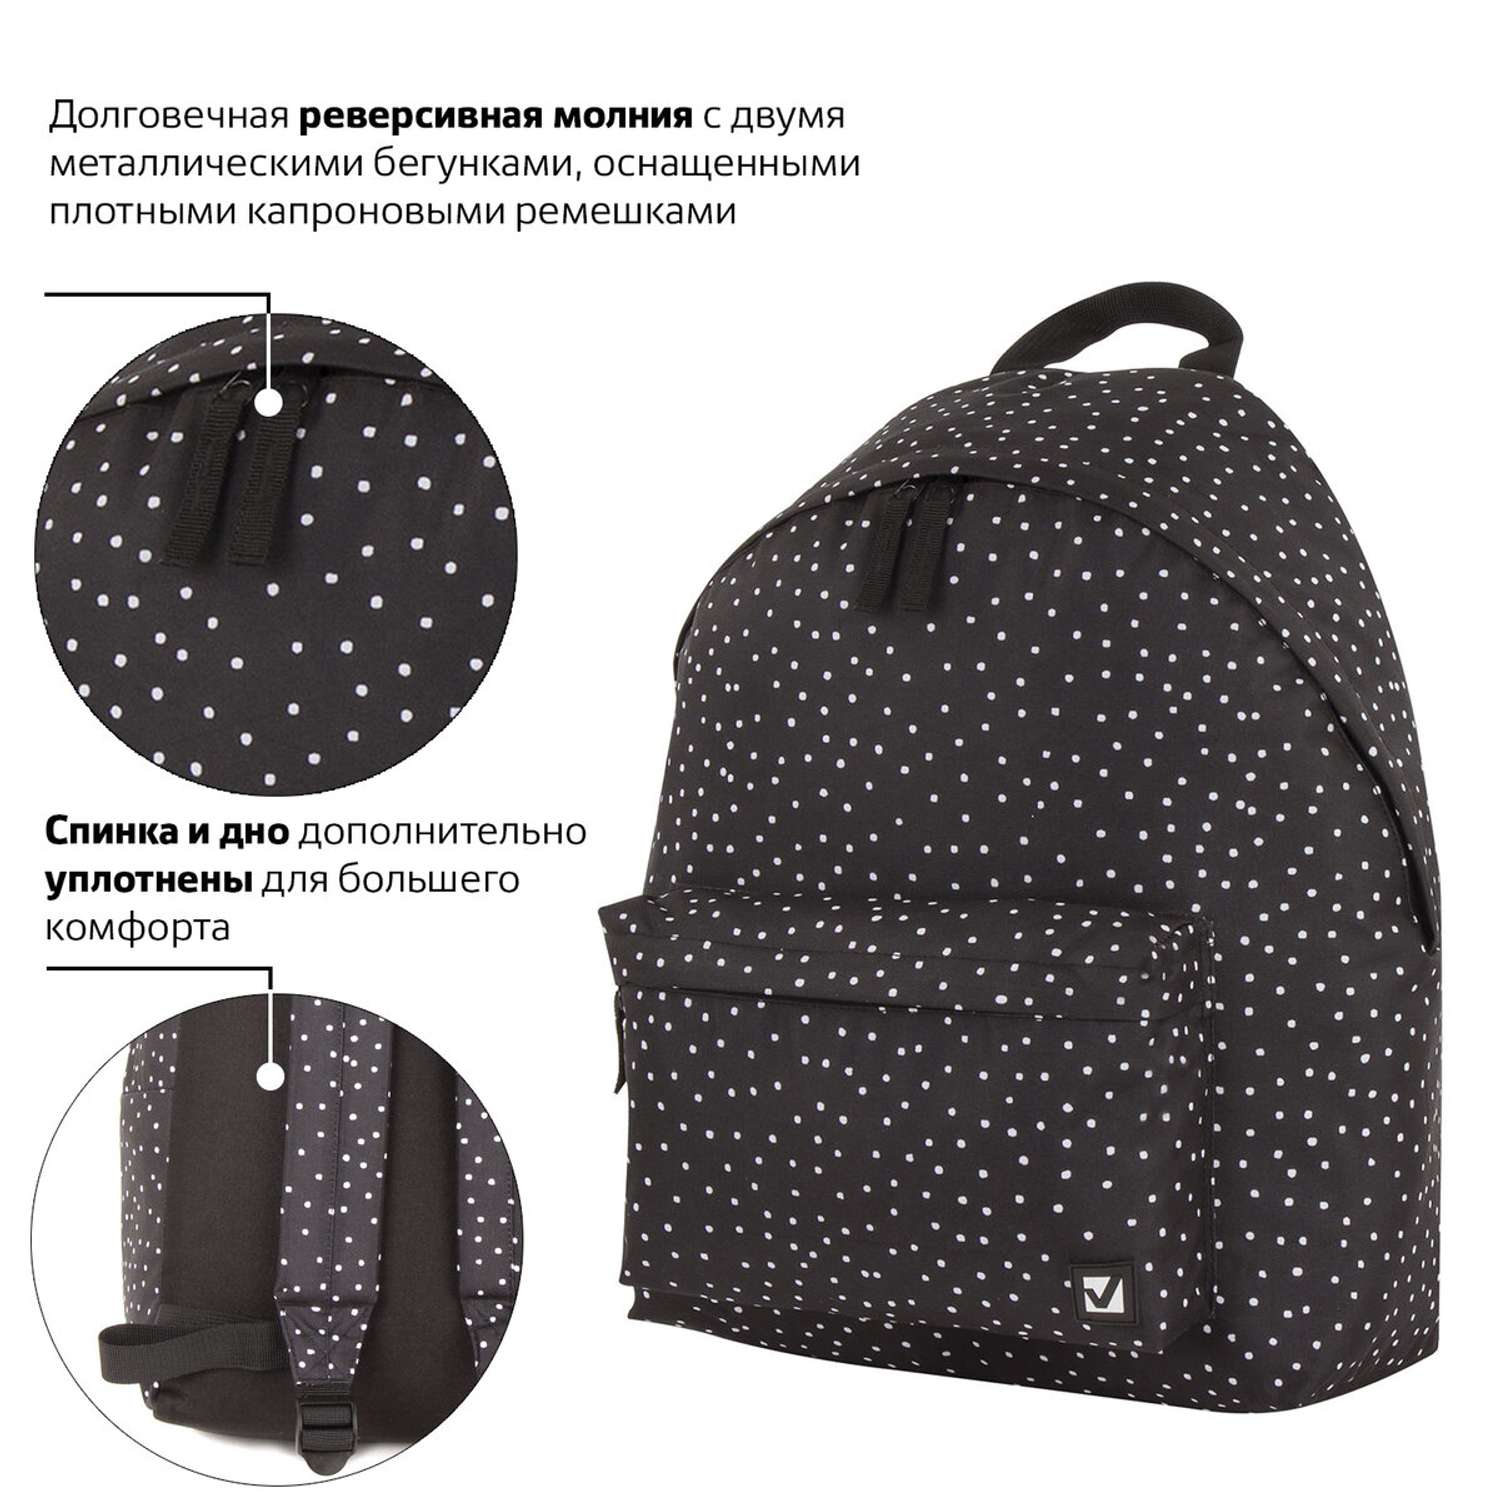 Рюкзак Brauberg универсальный сити-формат черный в горошек - фото 5